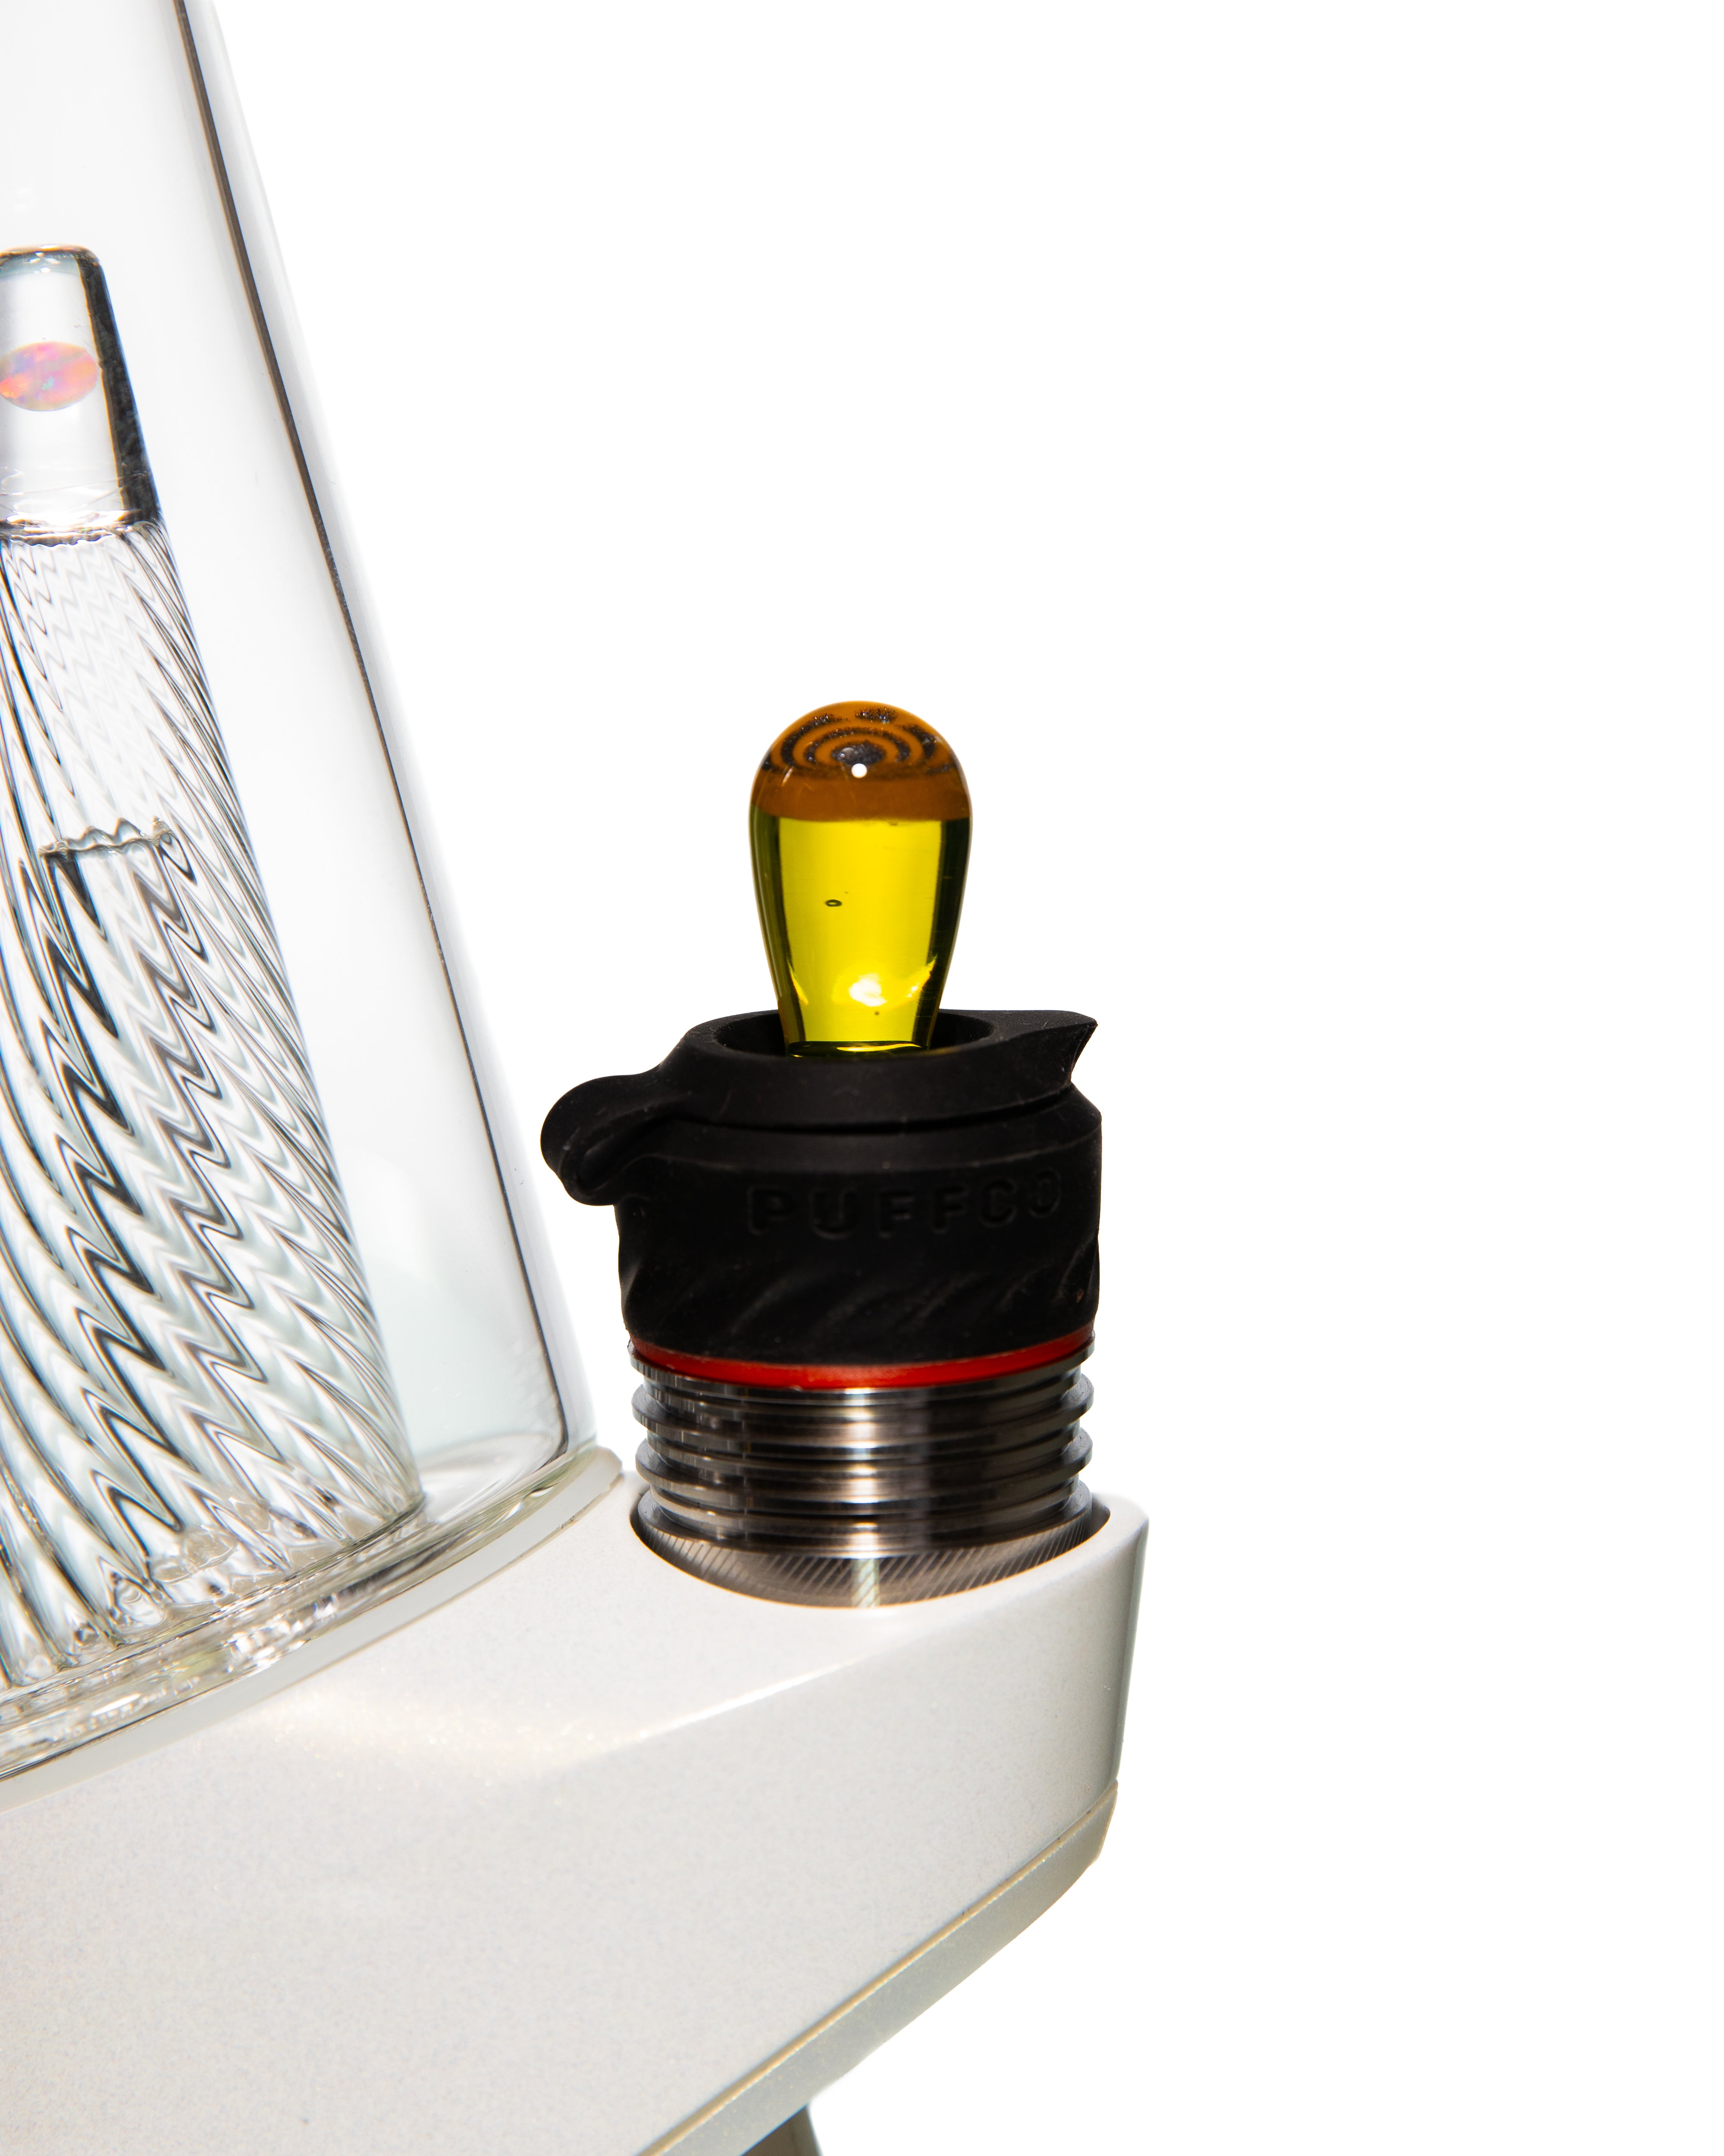 Steve Hulsebos Glass - Puffco Plug 13mm (Black and Yellow)